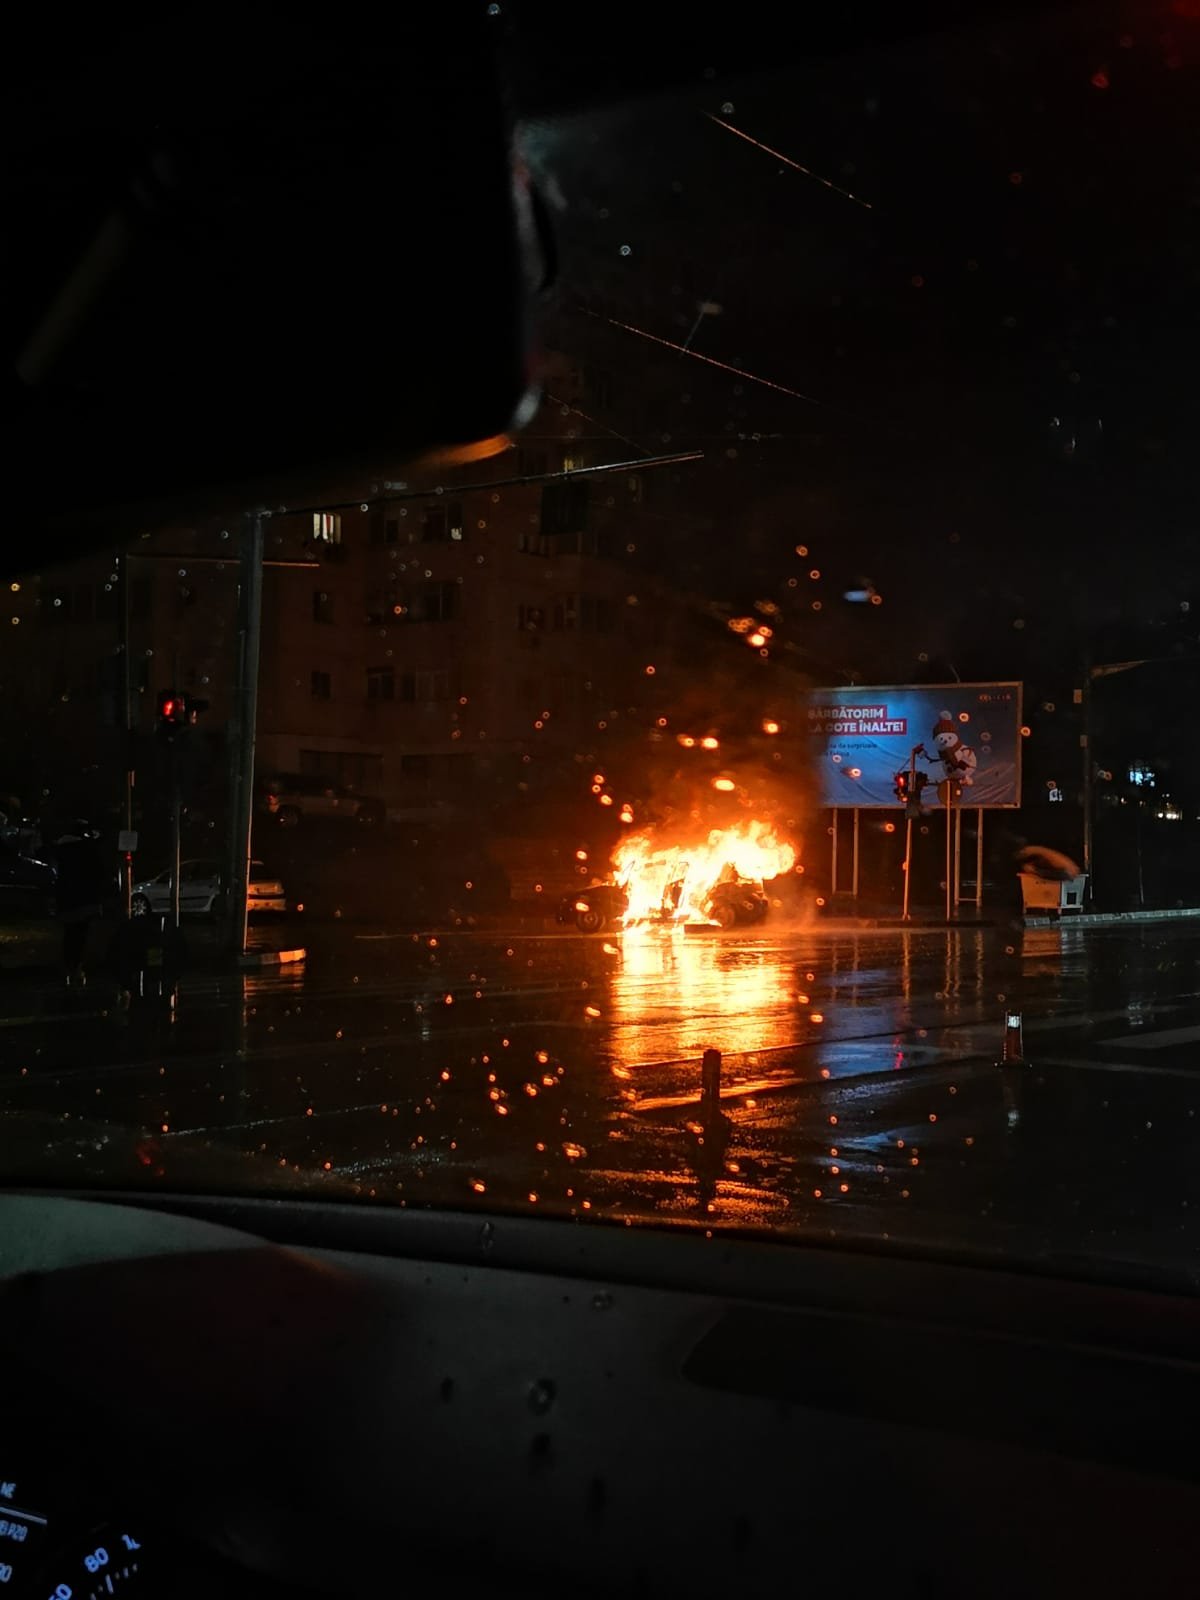  FOTO: Flăcări uriașe au cuprins o mașină în CUG, între Rond Vechi și Belvedere